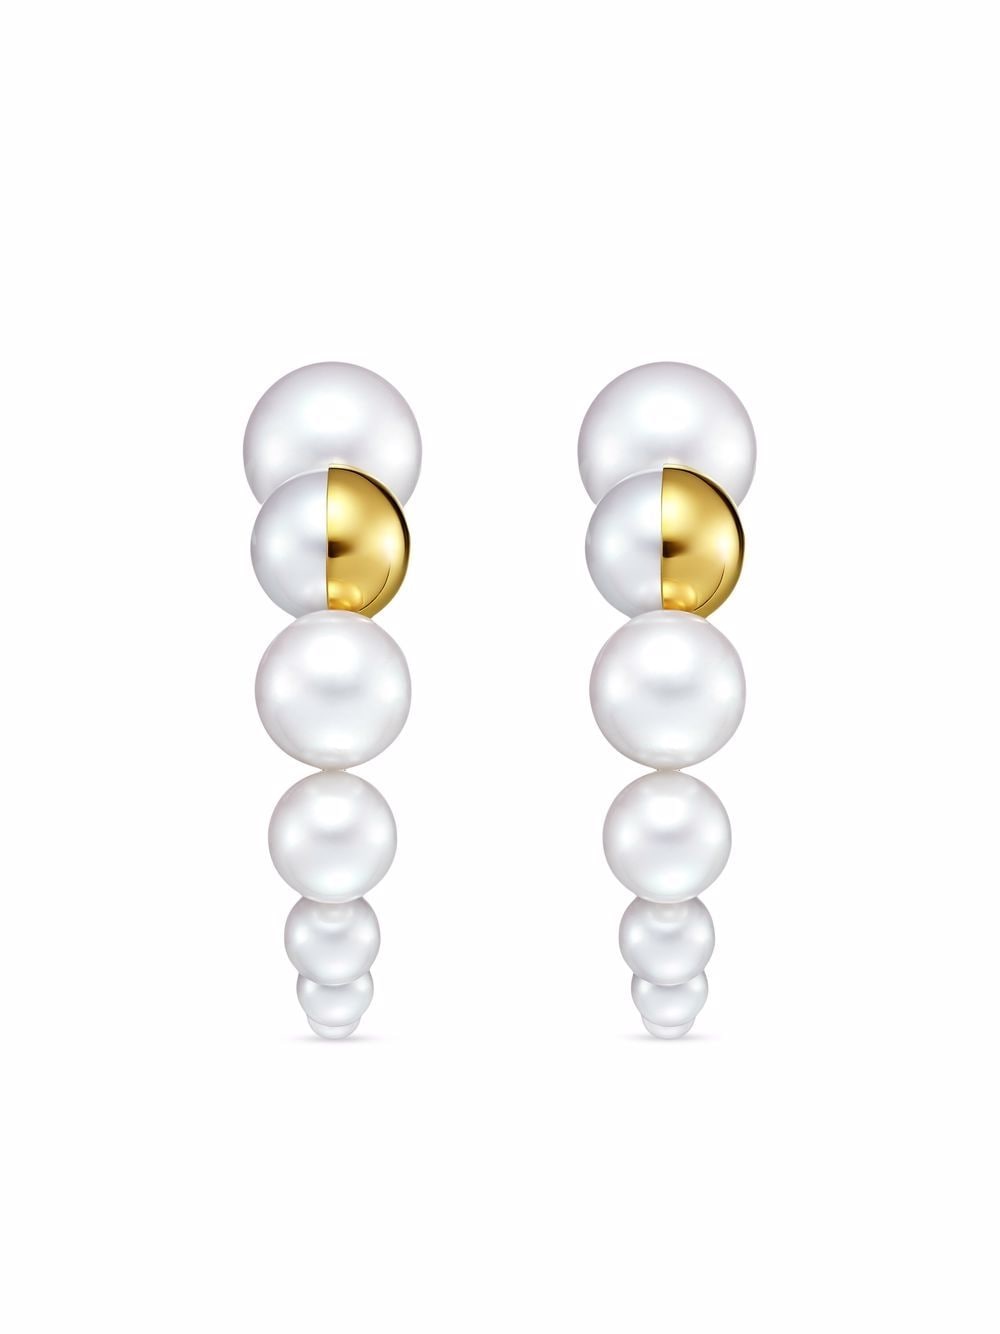 18kt yellow gold M/G TASAKI Shell freshwater pearl earrings